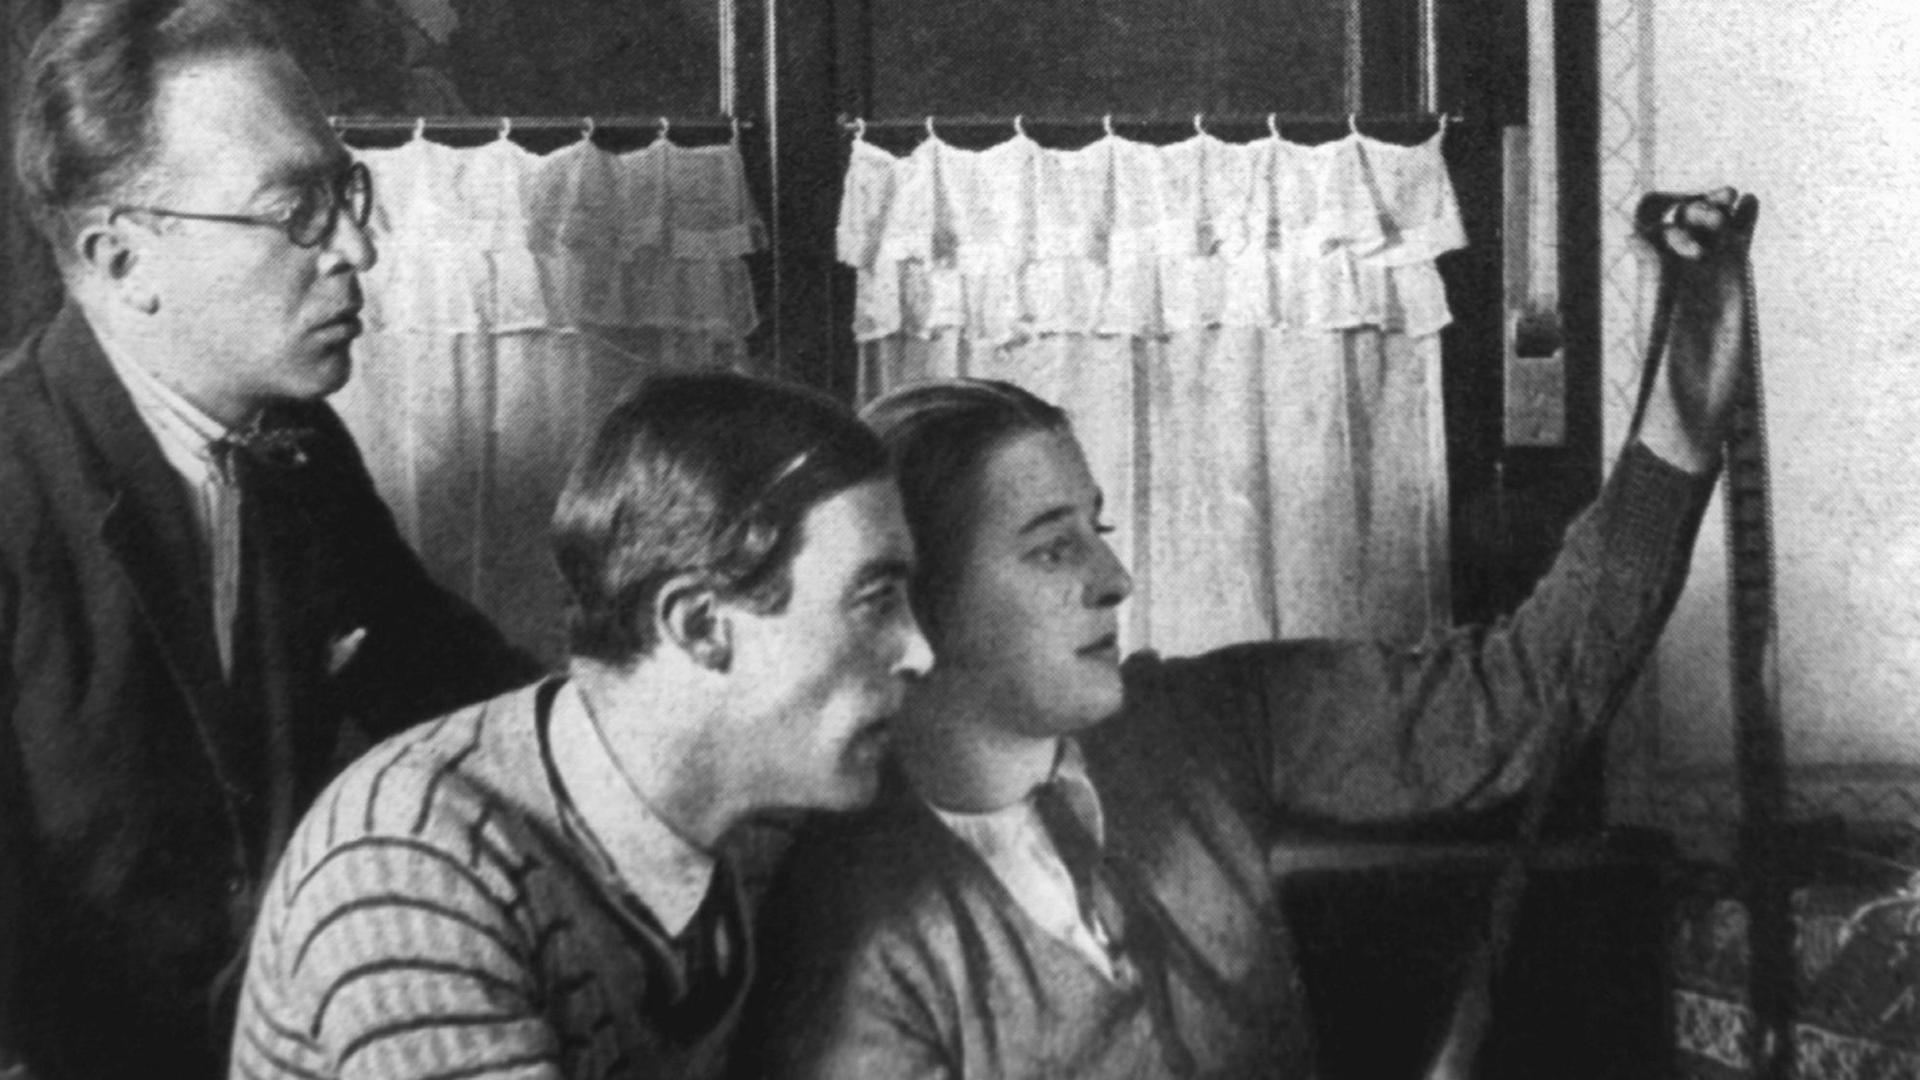 Die Filmpioniere Lotte Reiniger (r) und Walter Ruttmann (M) bei der Betrachtung eines Filmstreifens. Person links nicht identifiziert. 